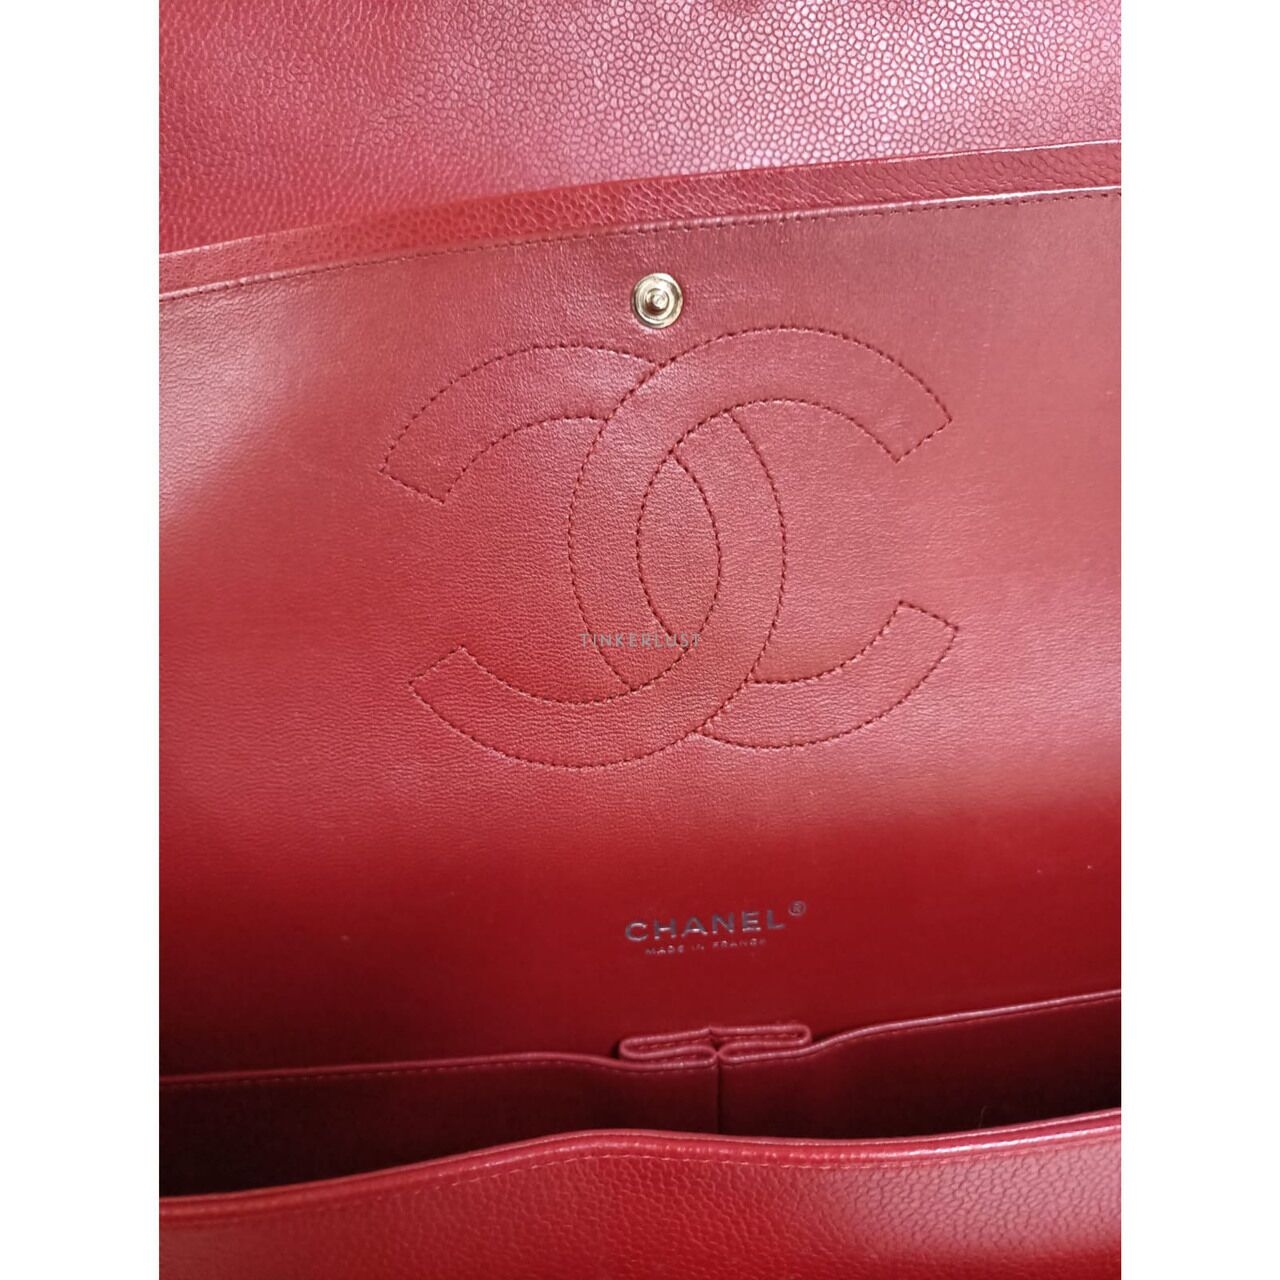 Chanel Classic Maxi Red Caviar #14 SHW Shoulder Bag